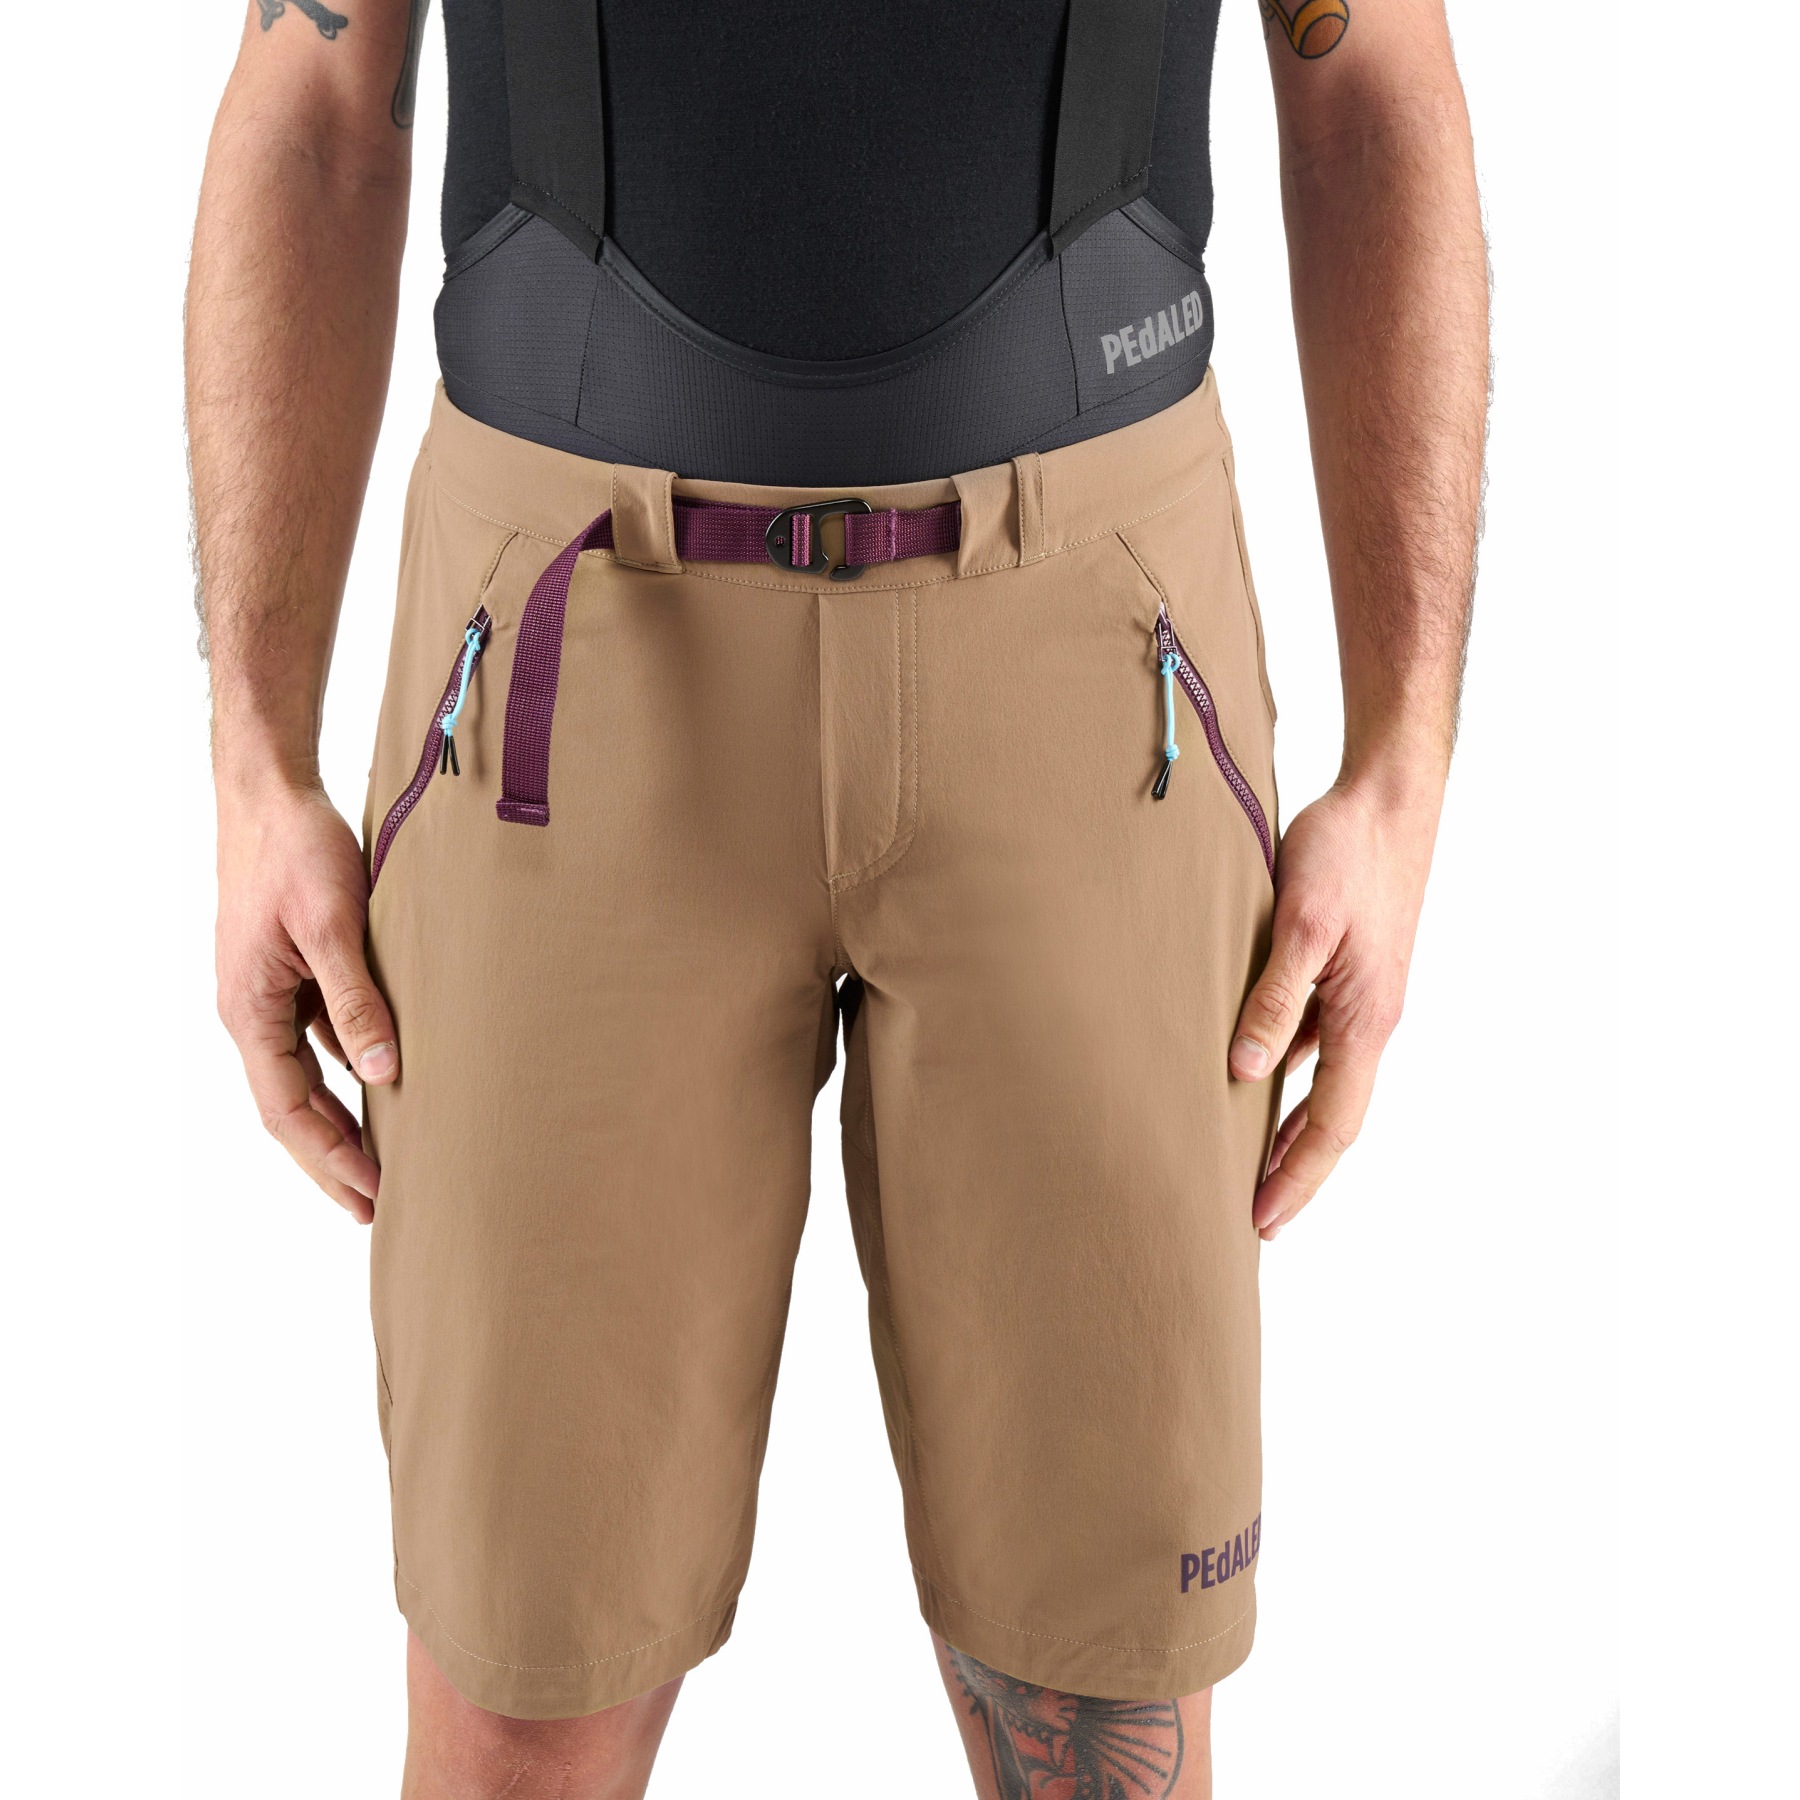 Produktbild von PEdALED Yama Trail Shorts Herren - Braun